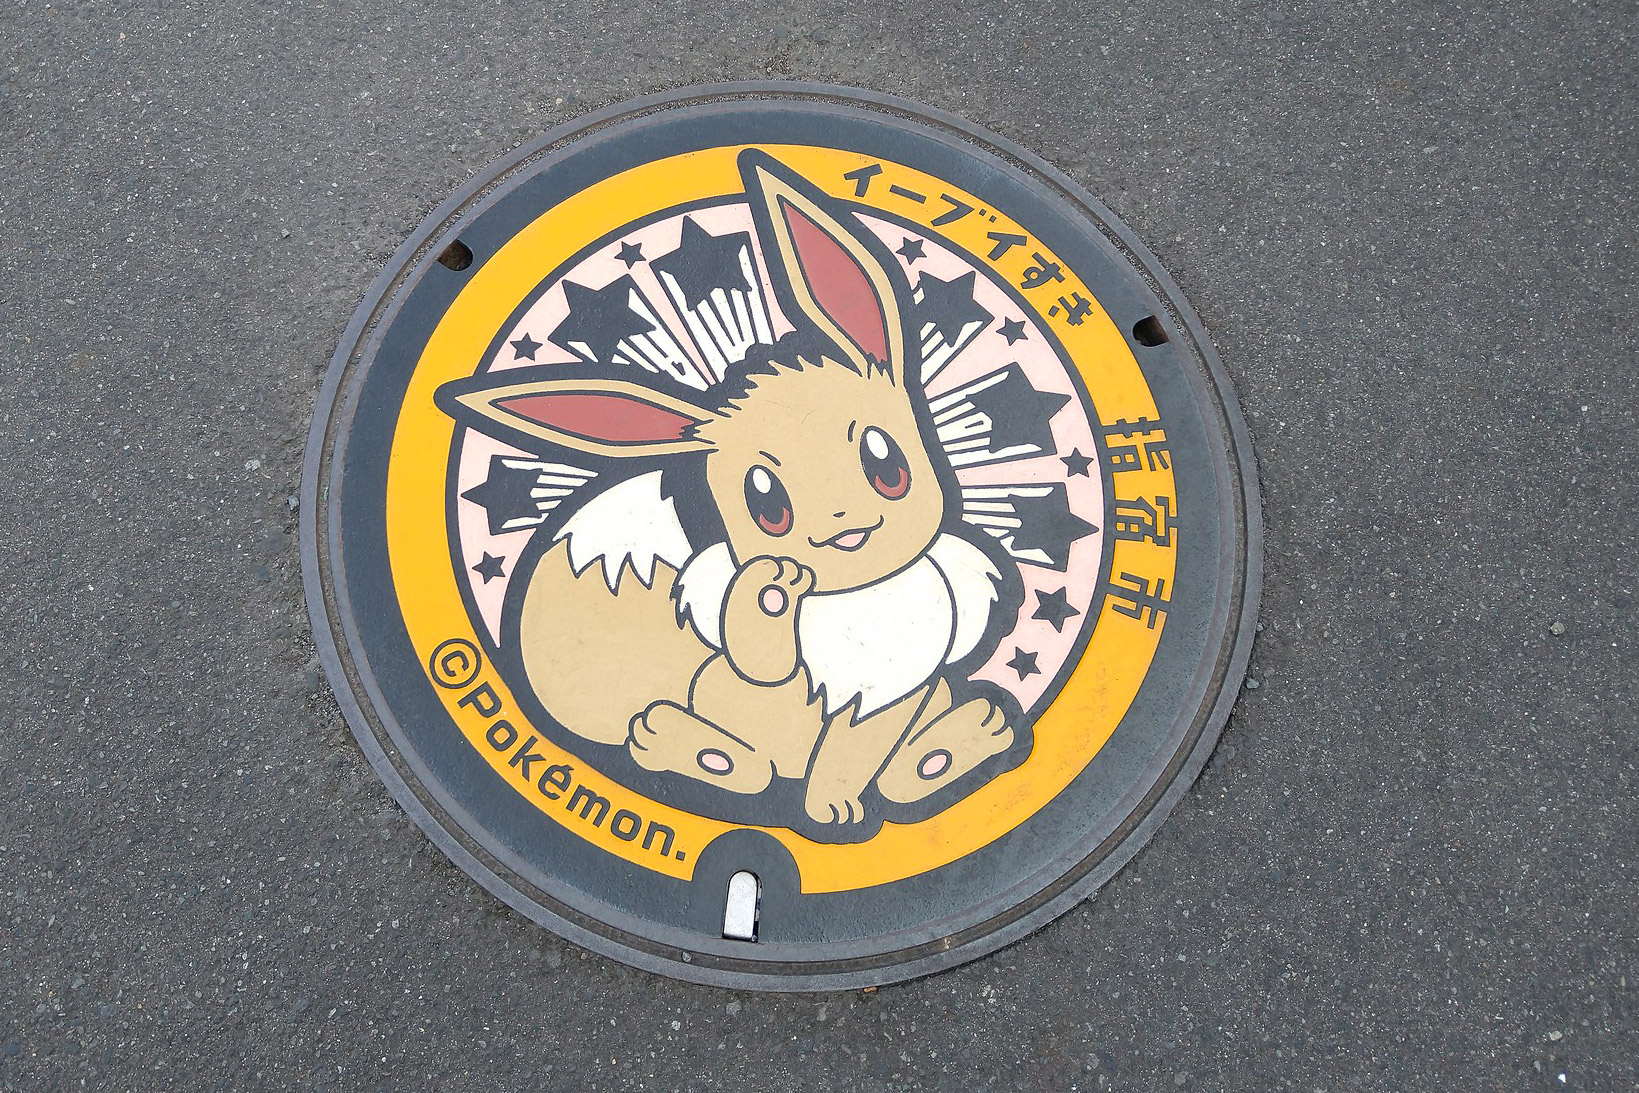 Der erste Pokémon-Kanaldeckel, der in Japan installiert wurde, zeigt ein Evoli. (Foto: Bob Walker, Flickr https://flic.kr/p/2hvPi9L CC BY-SA 2.0)